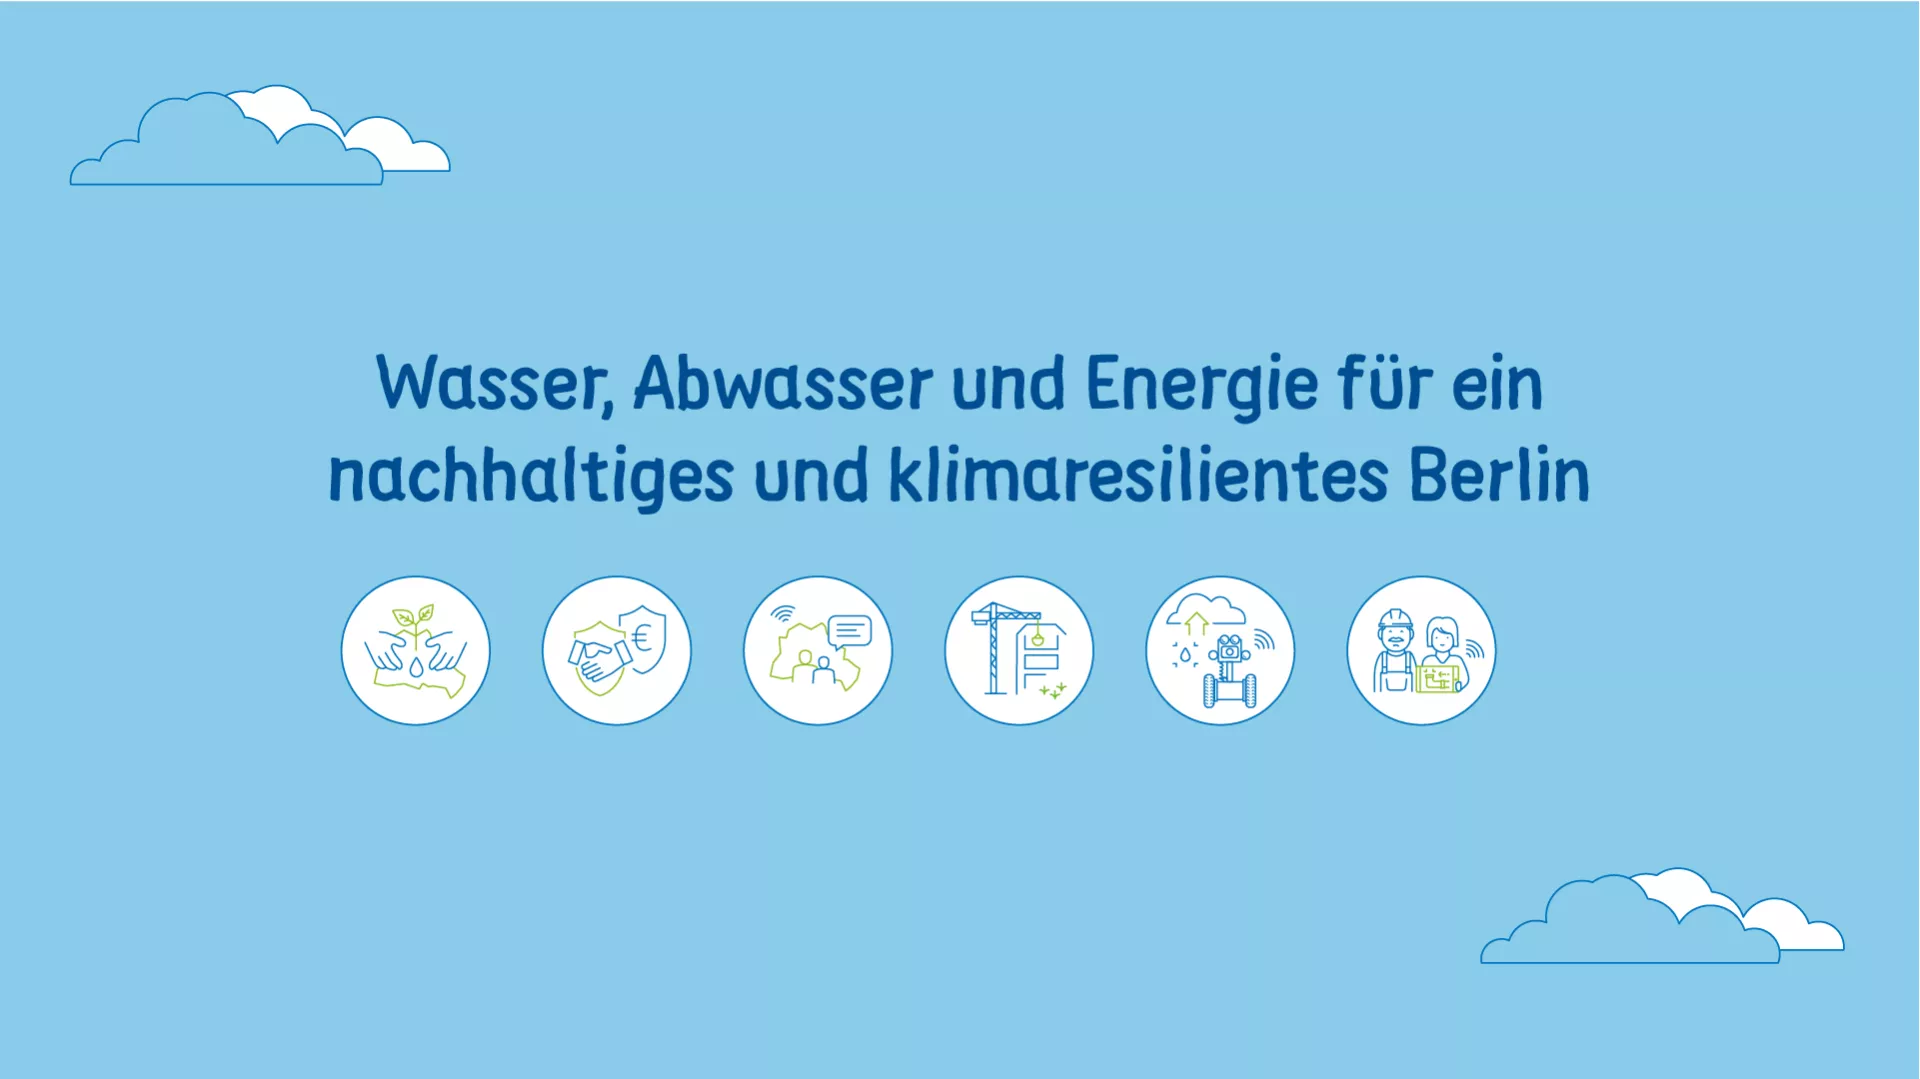 Ikonografie, Slogan Wasser, Abwasser und Energie für ein nachhaltiges und klimaresilientes Berlin